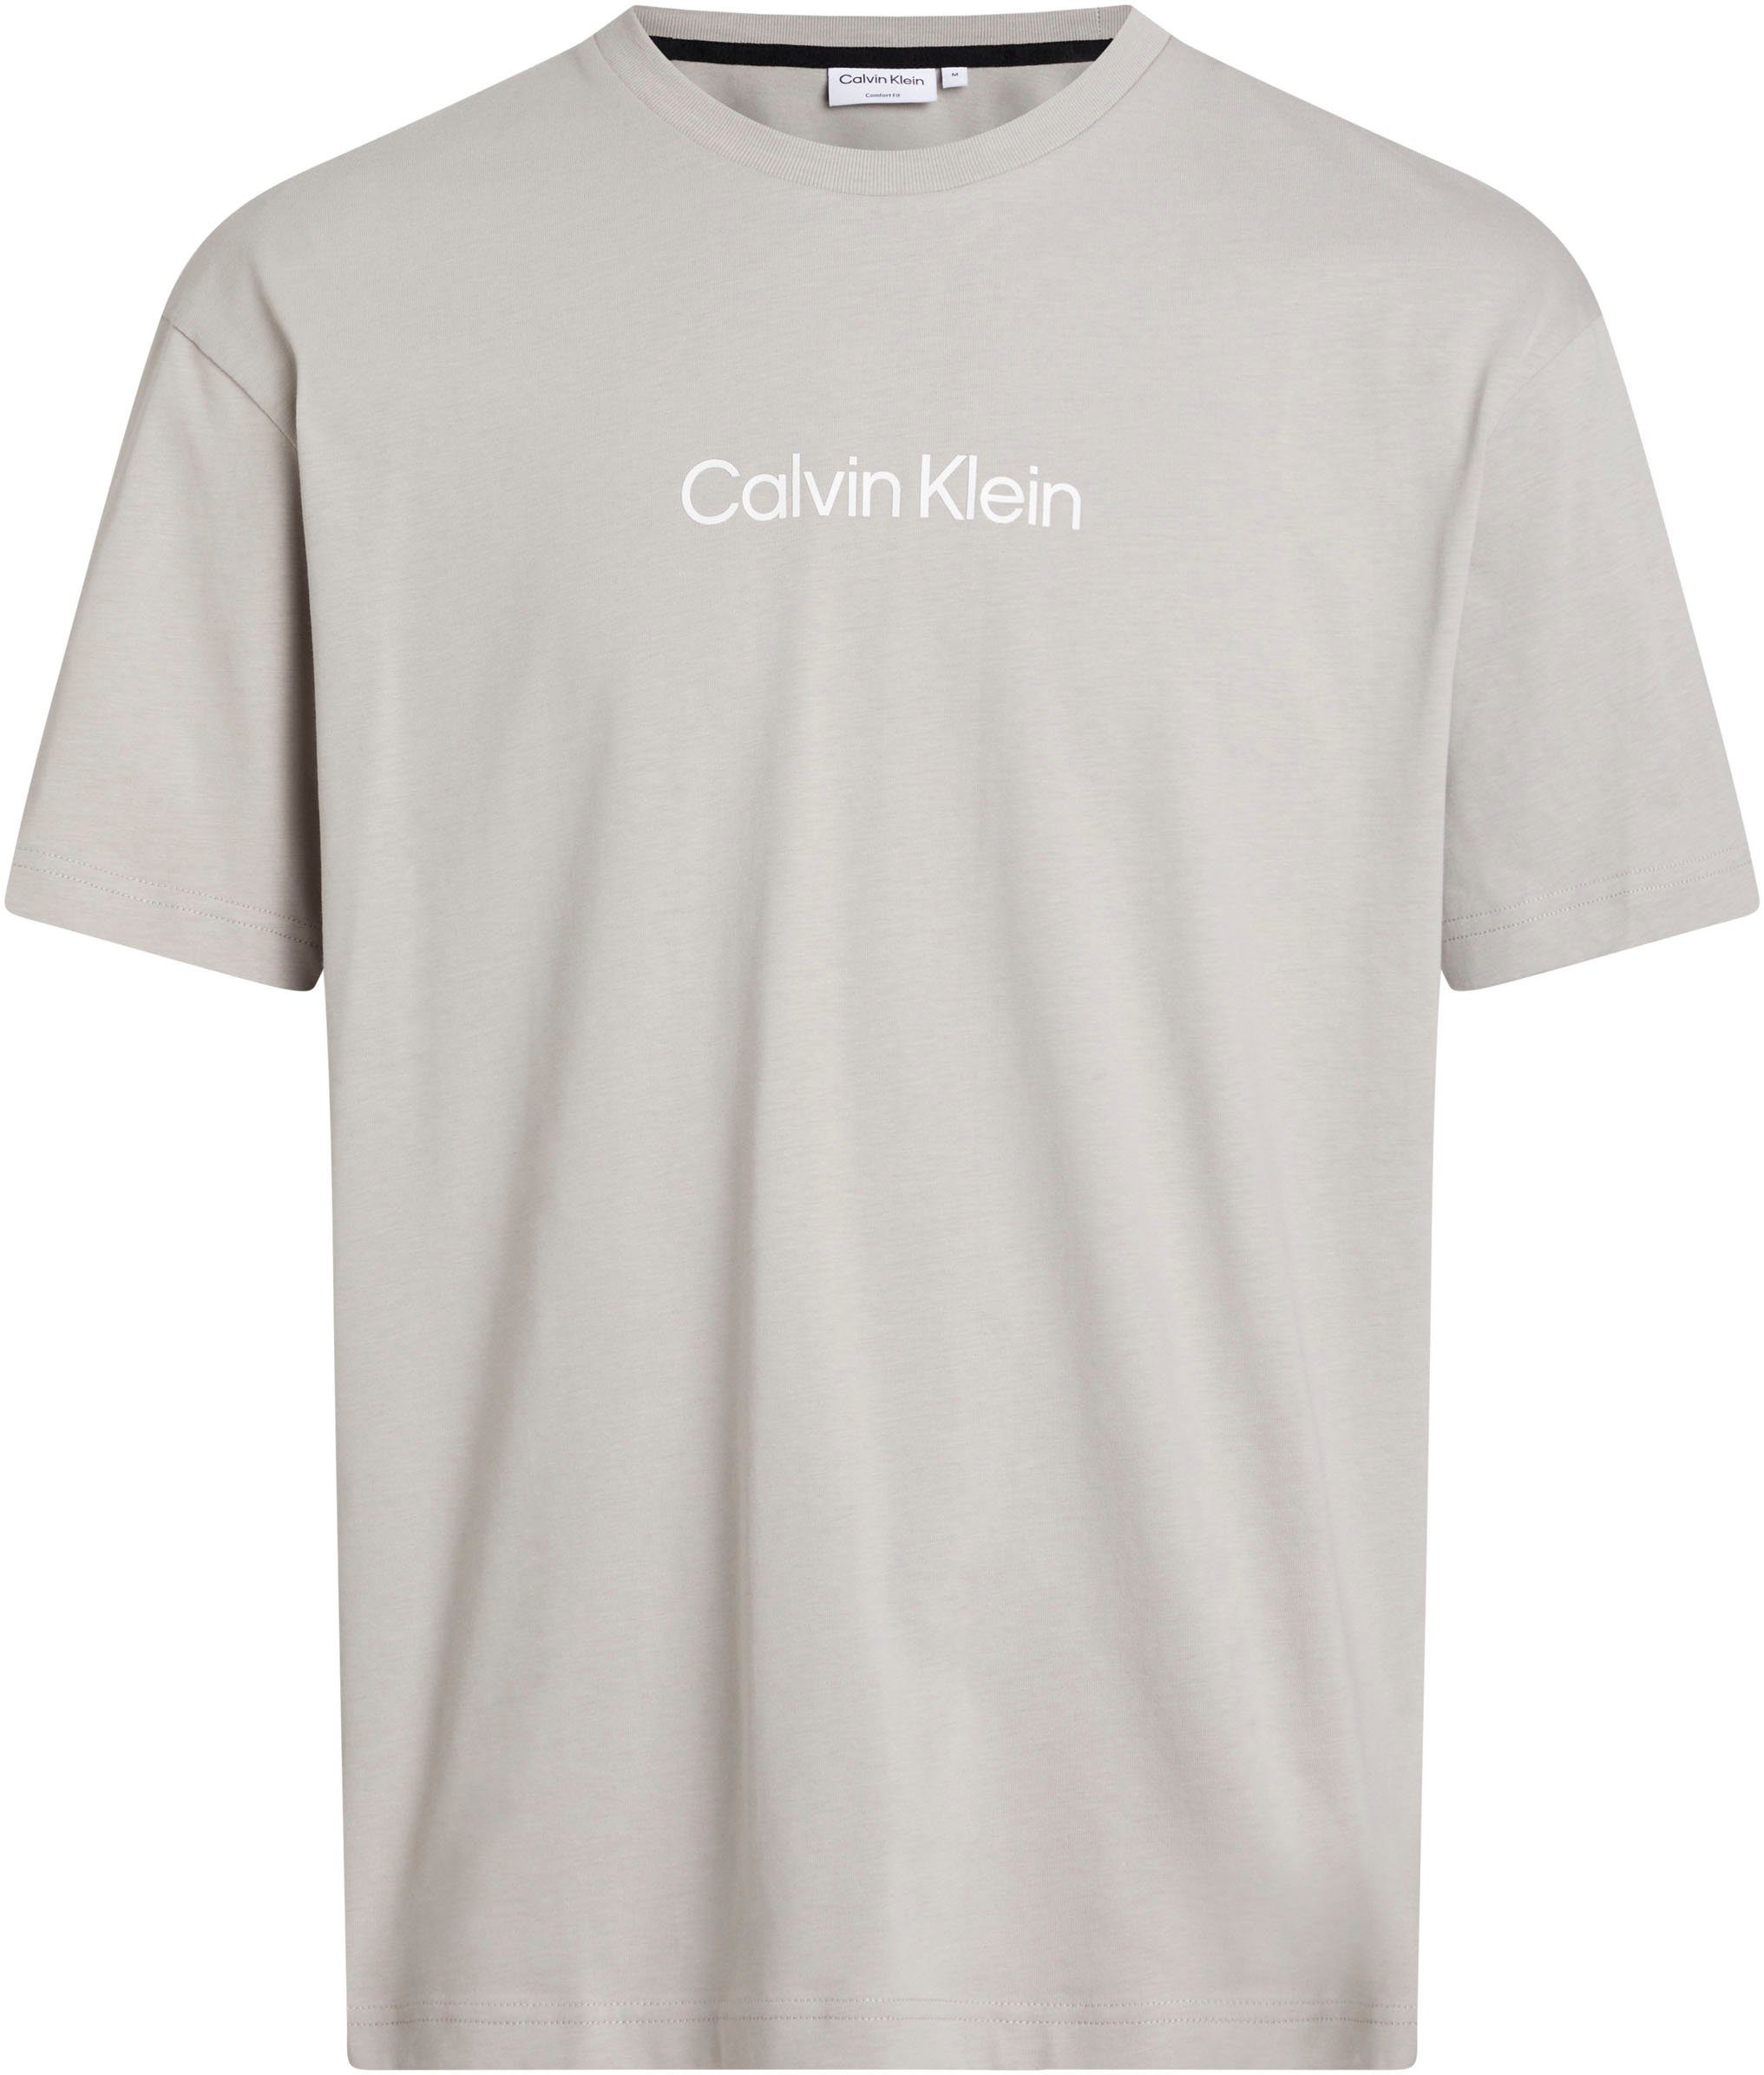 T-Shirt Markenlabel Calvin Klein Gray mit T-SHIRT LOGO HERO Ghost COMFORT aufgedrucktem